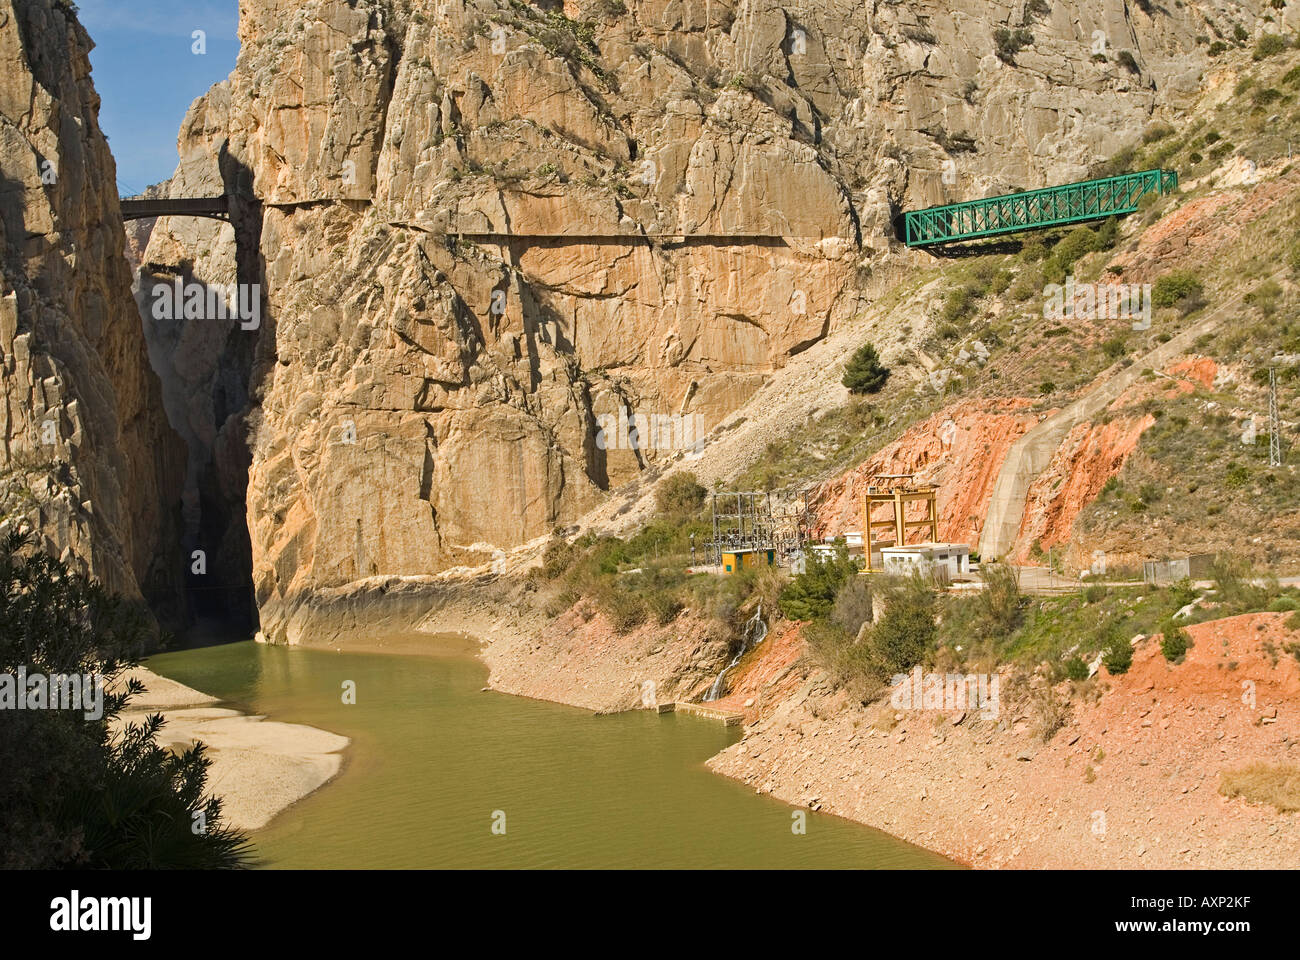 Camino del Rey in Spain Stock Photo